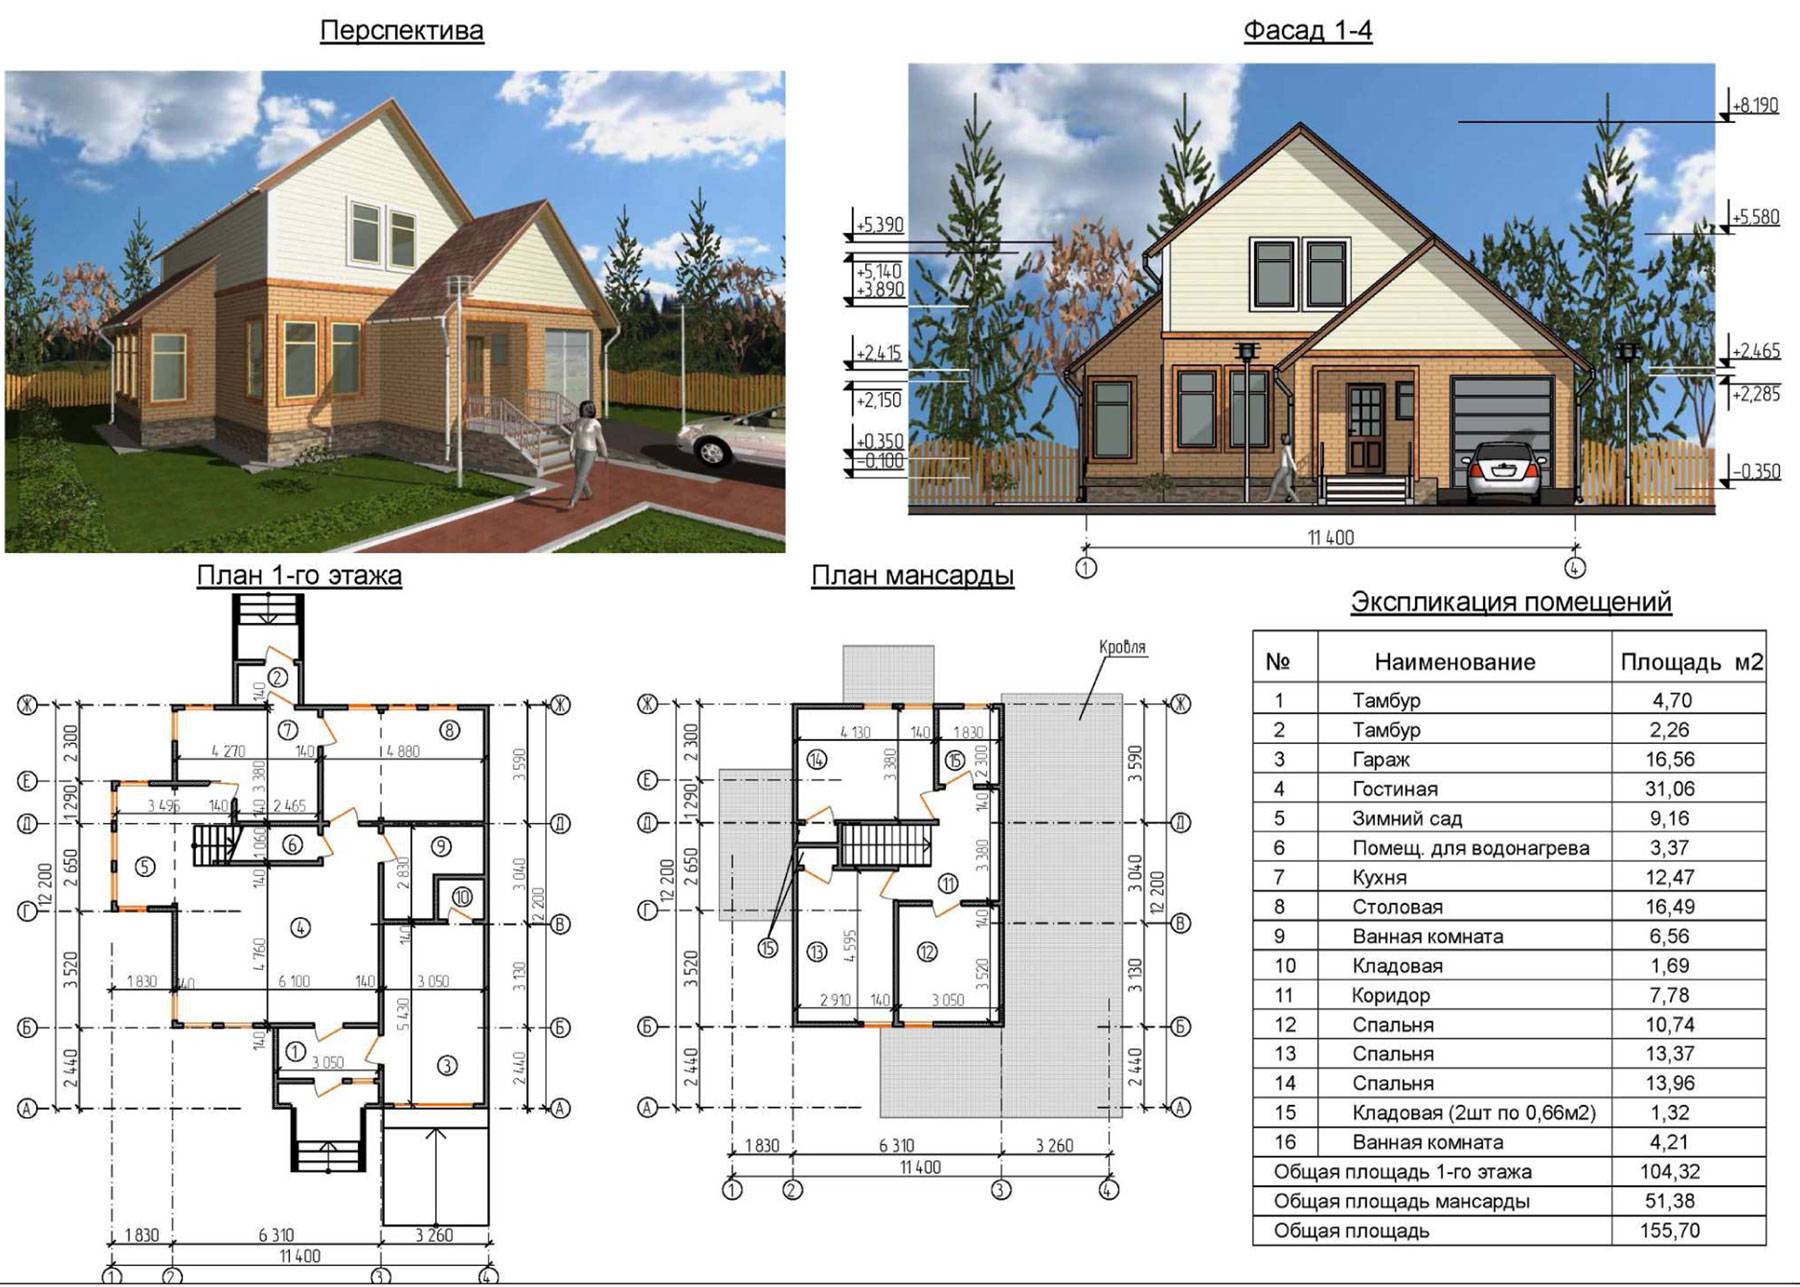 Как продумать план одноэтажного дома с мансардой до 150 кв.м: 6×6, 10×10, 8×10, 10×12, 9×8: Идеи